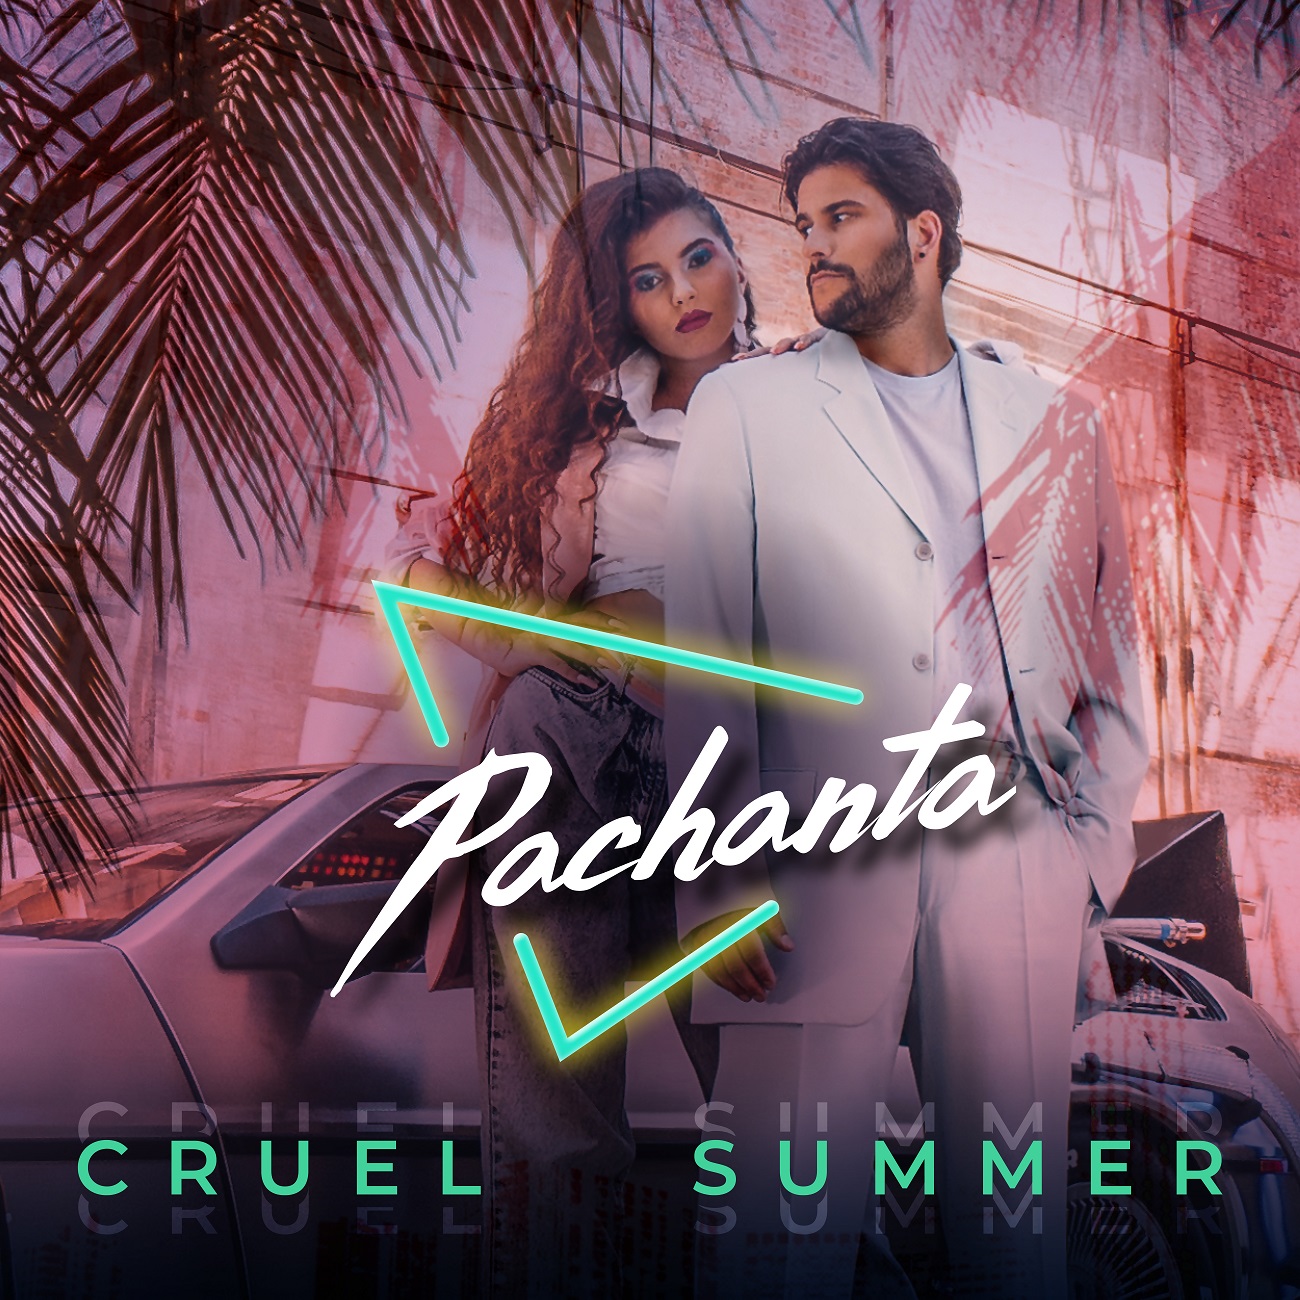 Pachanta - Cruel summer - cover 1.jpg